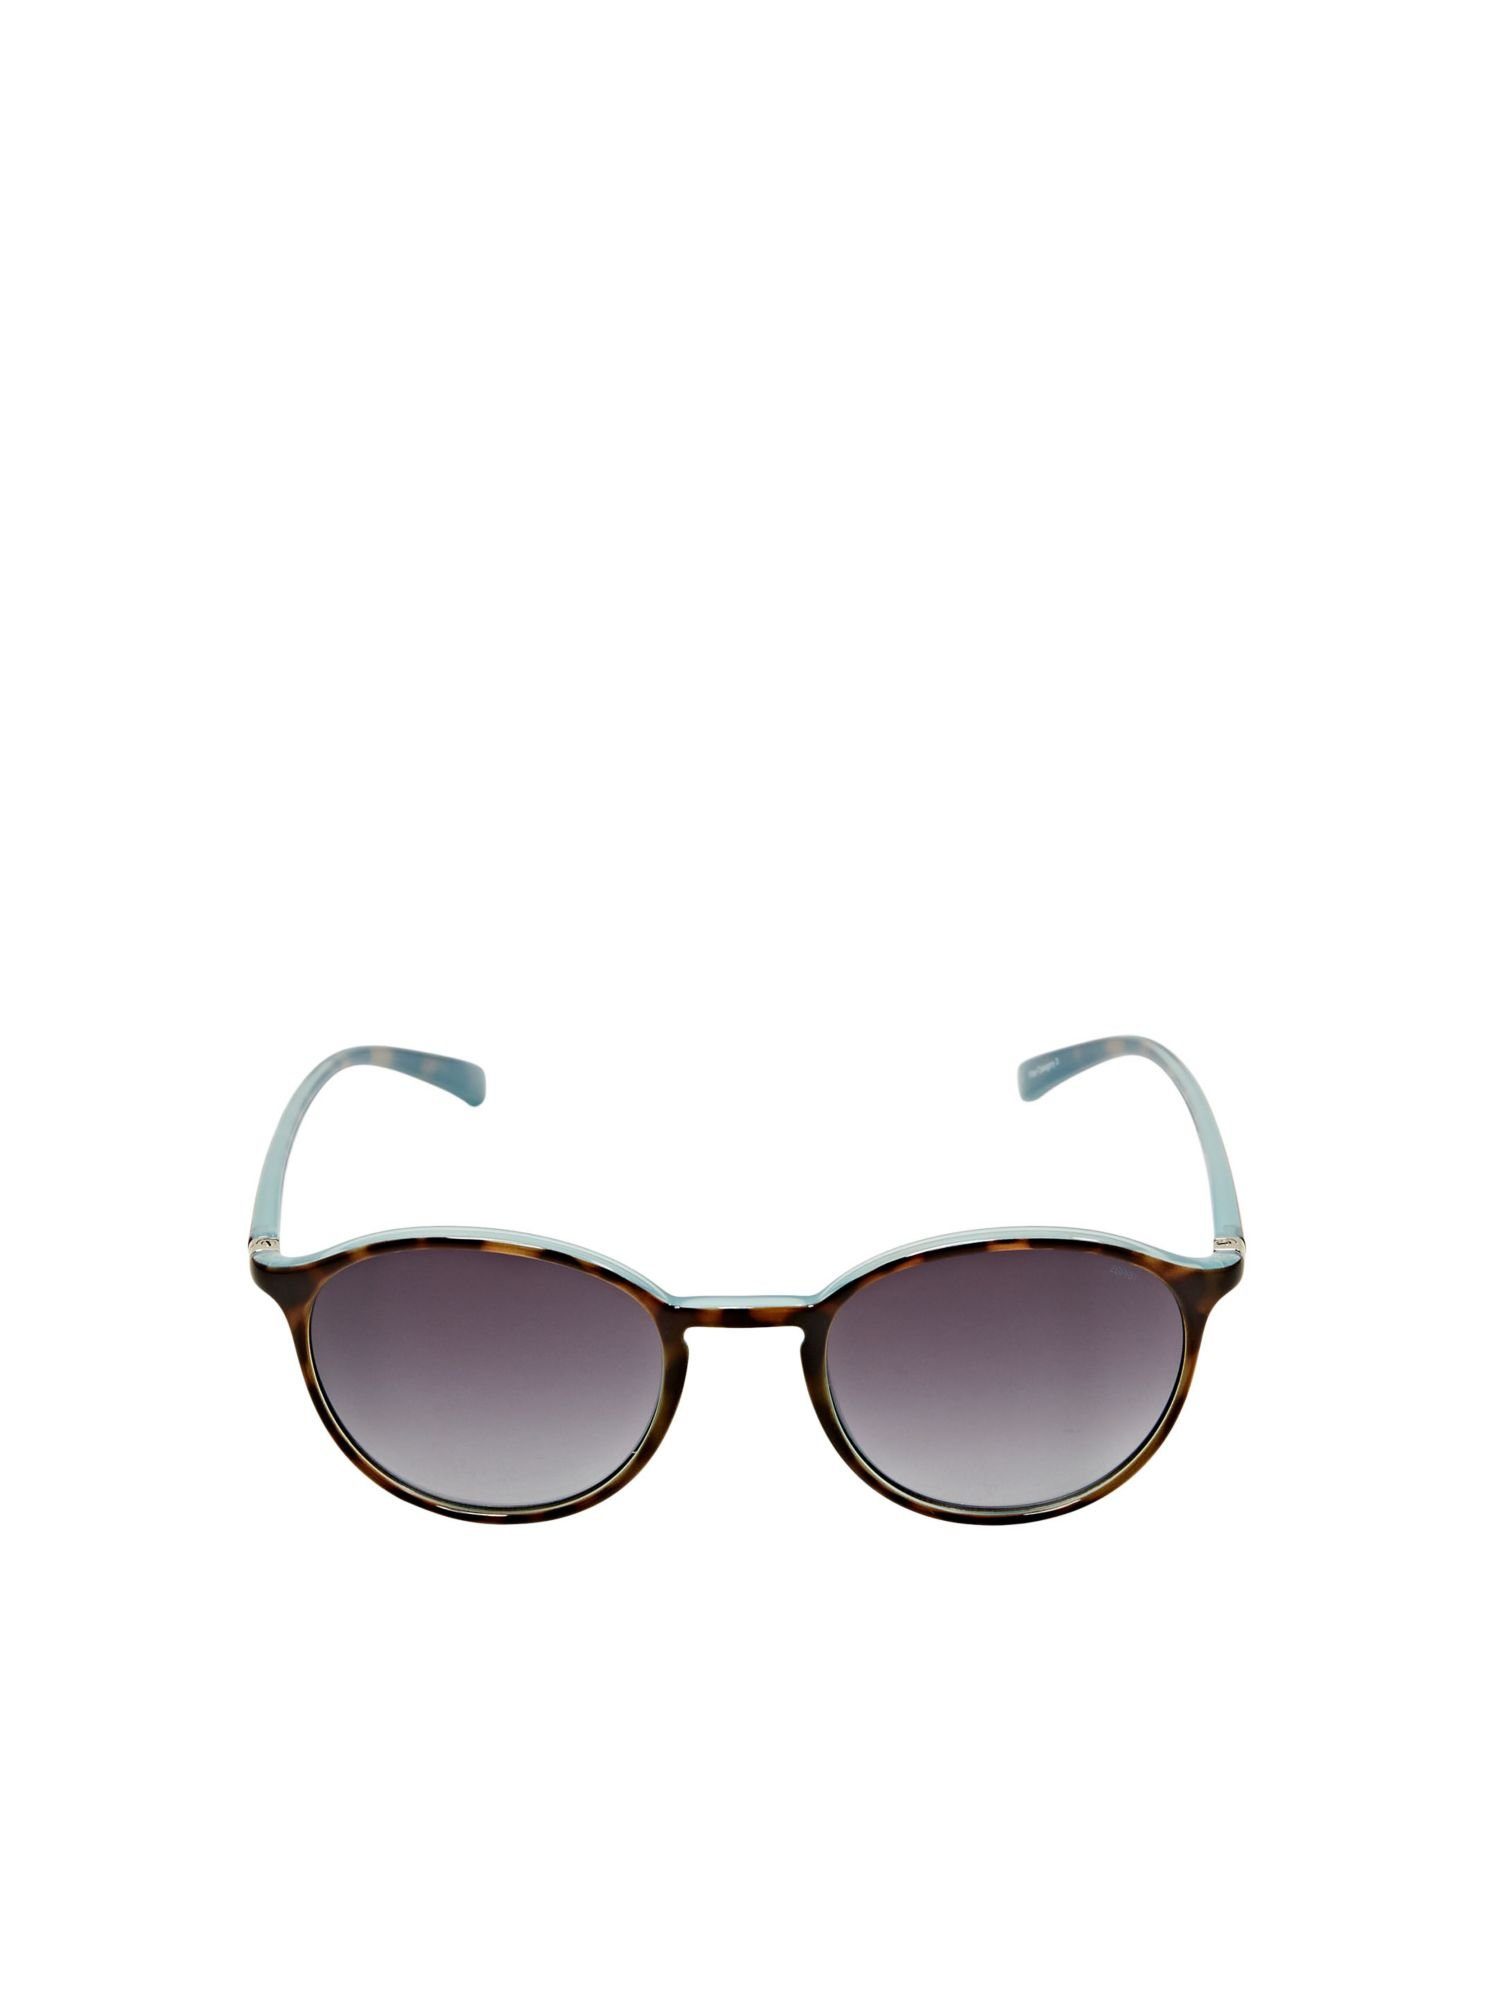 Unisex-Sonnenbrille Sonnenbrille Esprit runden mit BLUE Verlaufsgläsern DEMI